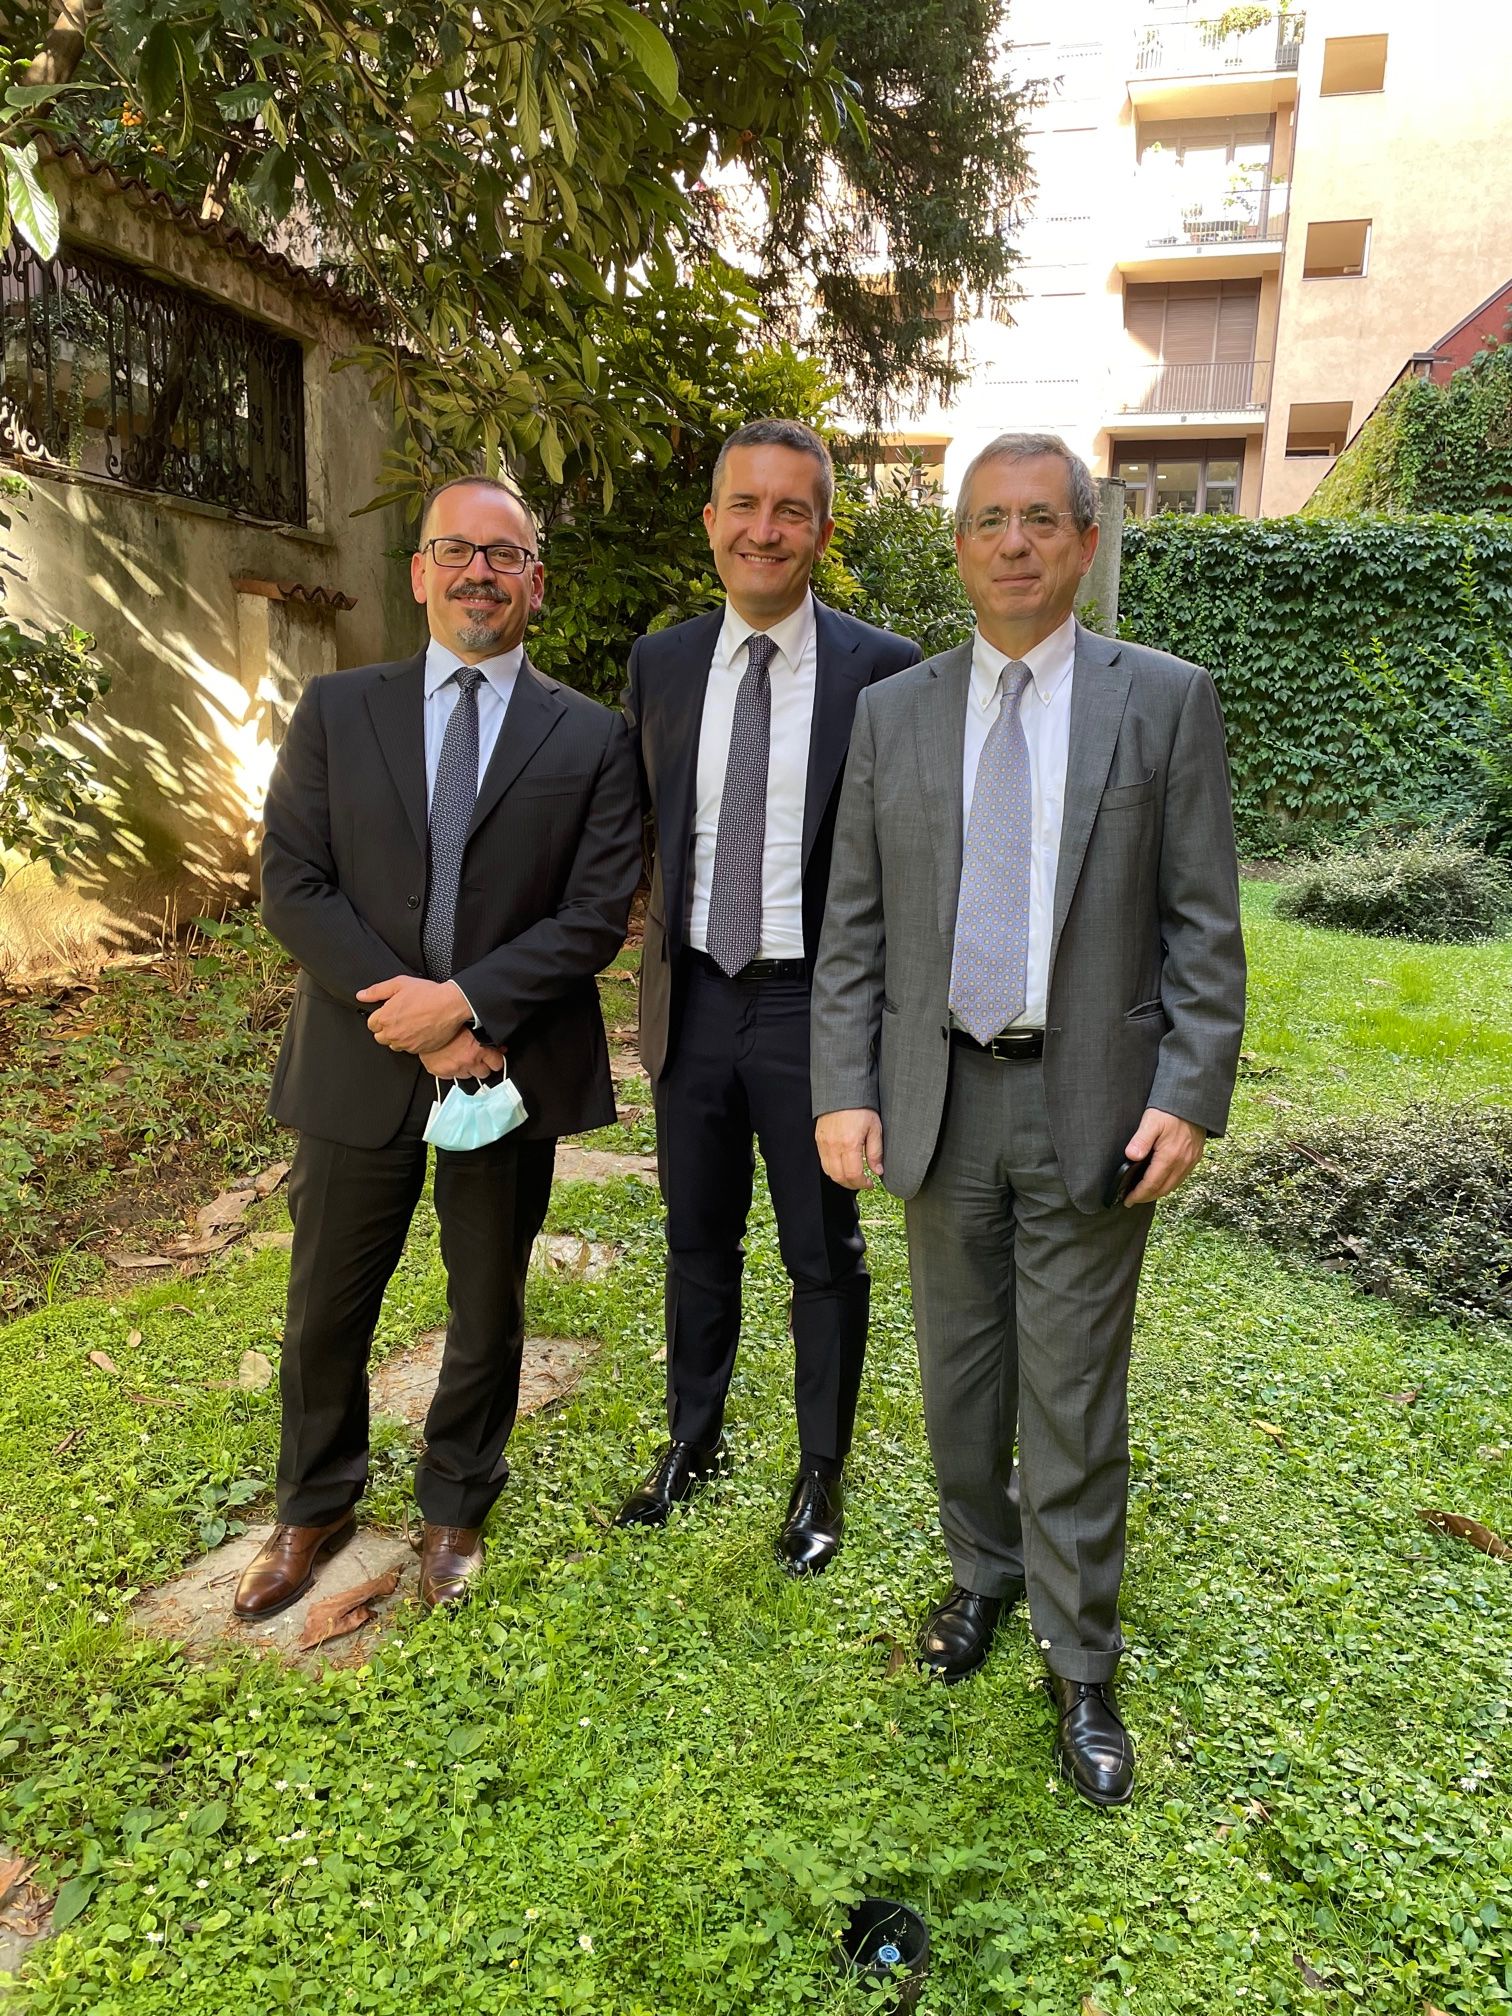 De gauche à droite: Fabio D'Urso, Allessandro Dandollo (Alfaproject), Paolo Vivani (CLS)